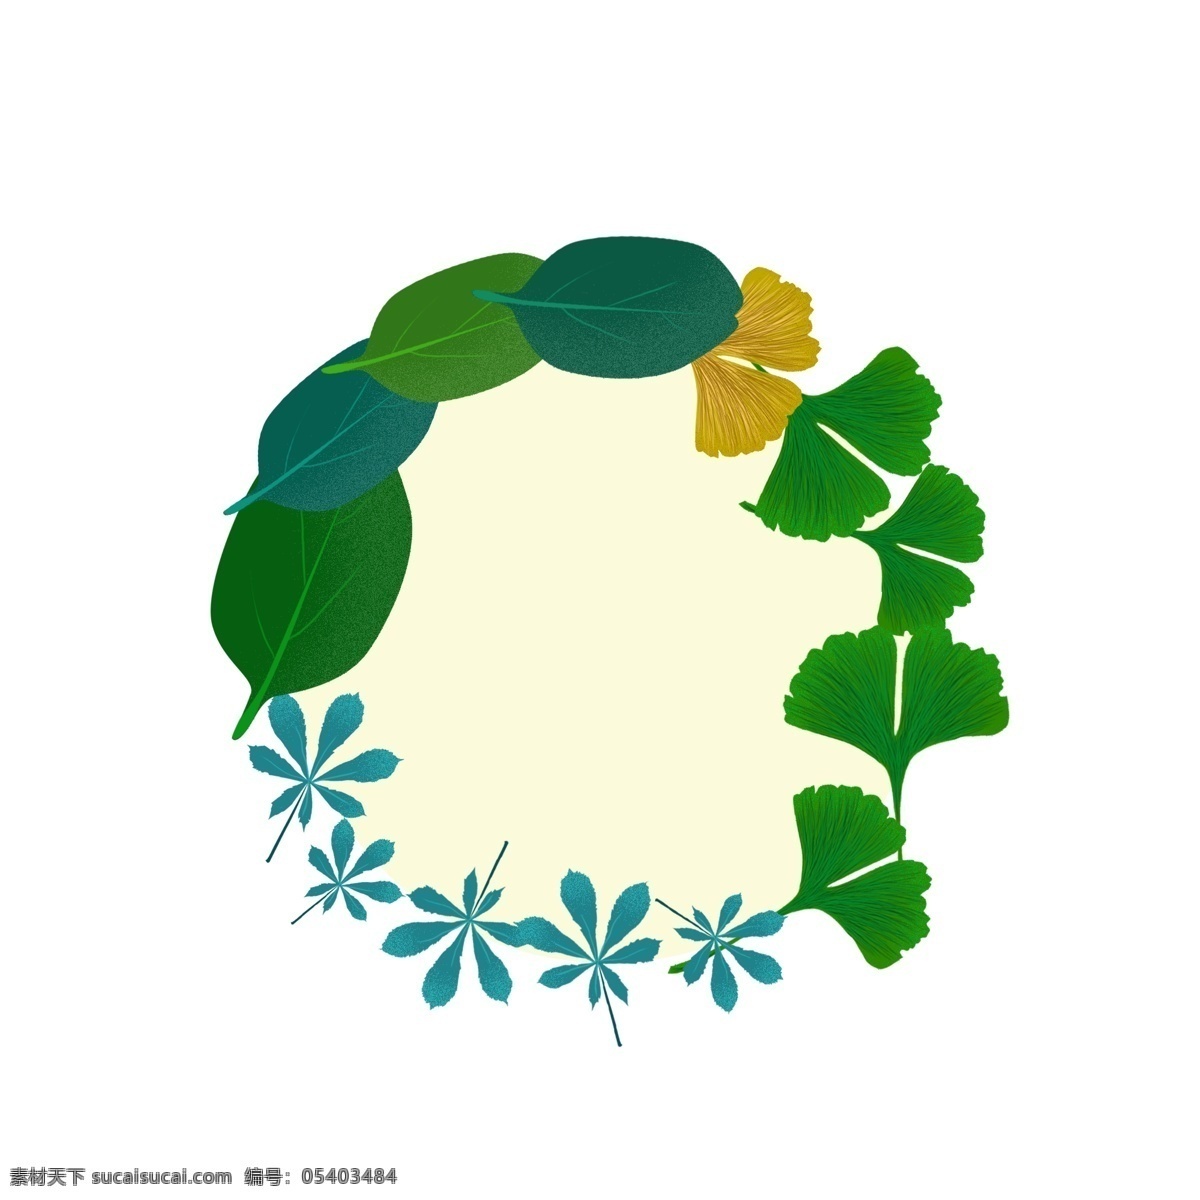 叶子 植物 绿色 手绘 风 小 清新 边框 元素 小清新 装饰边框